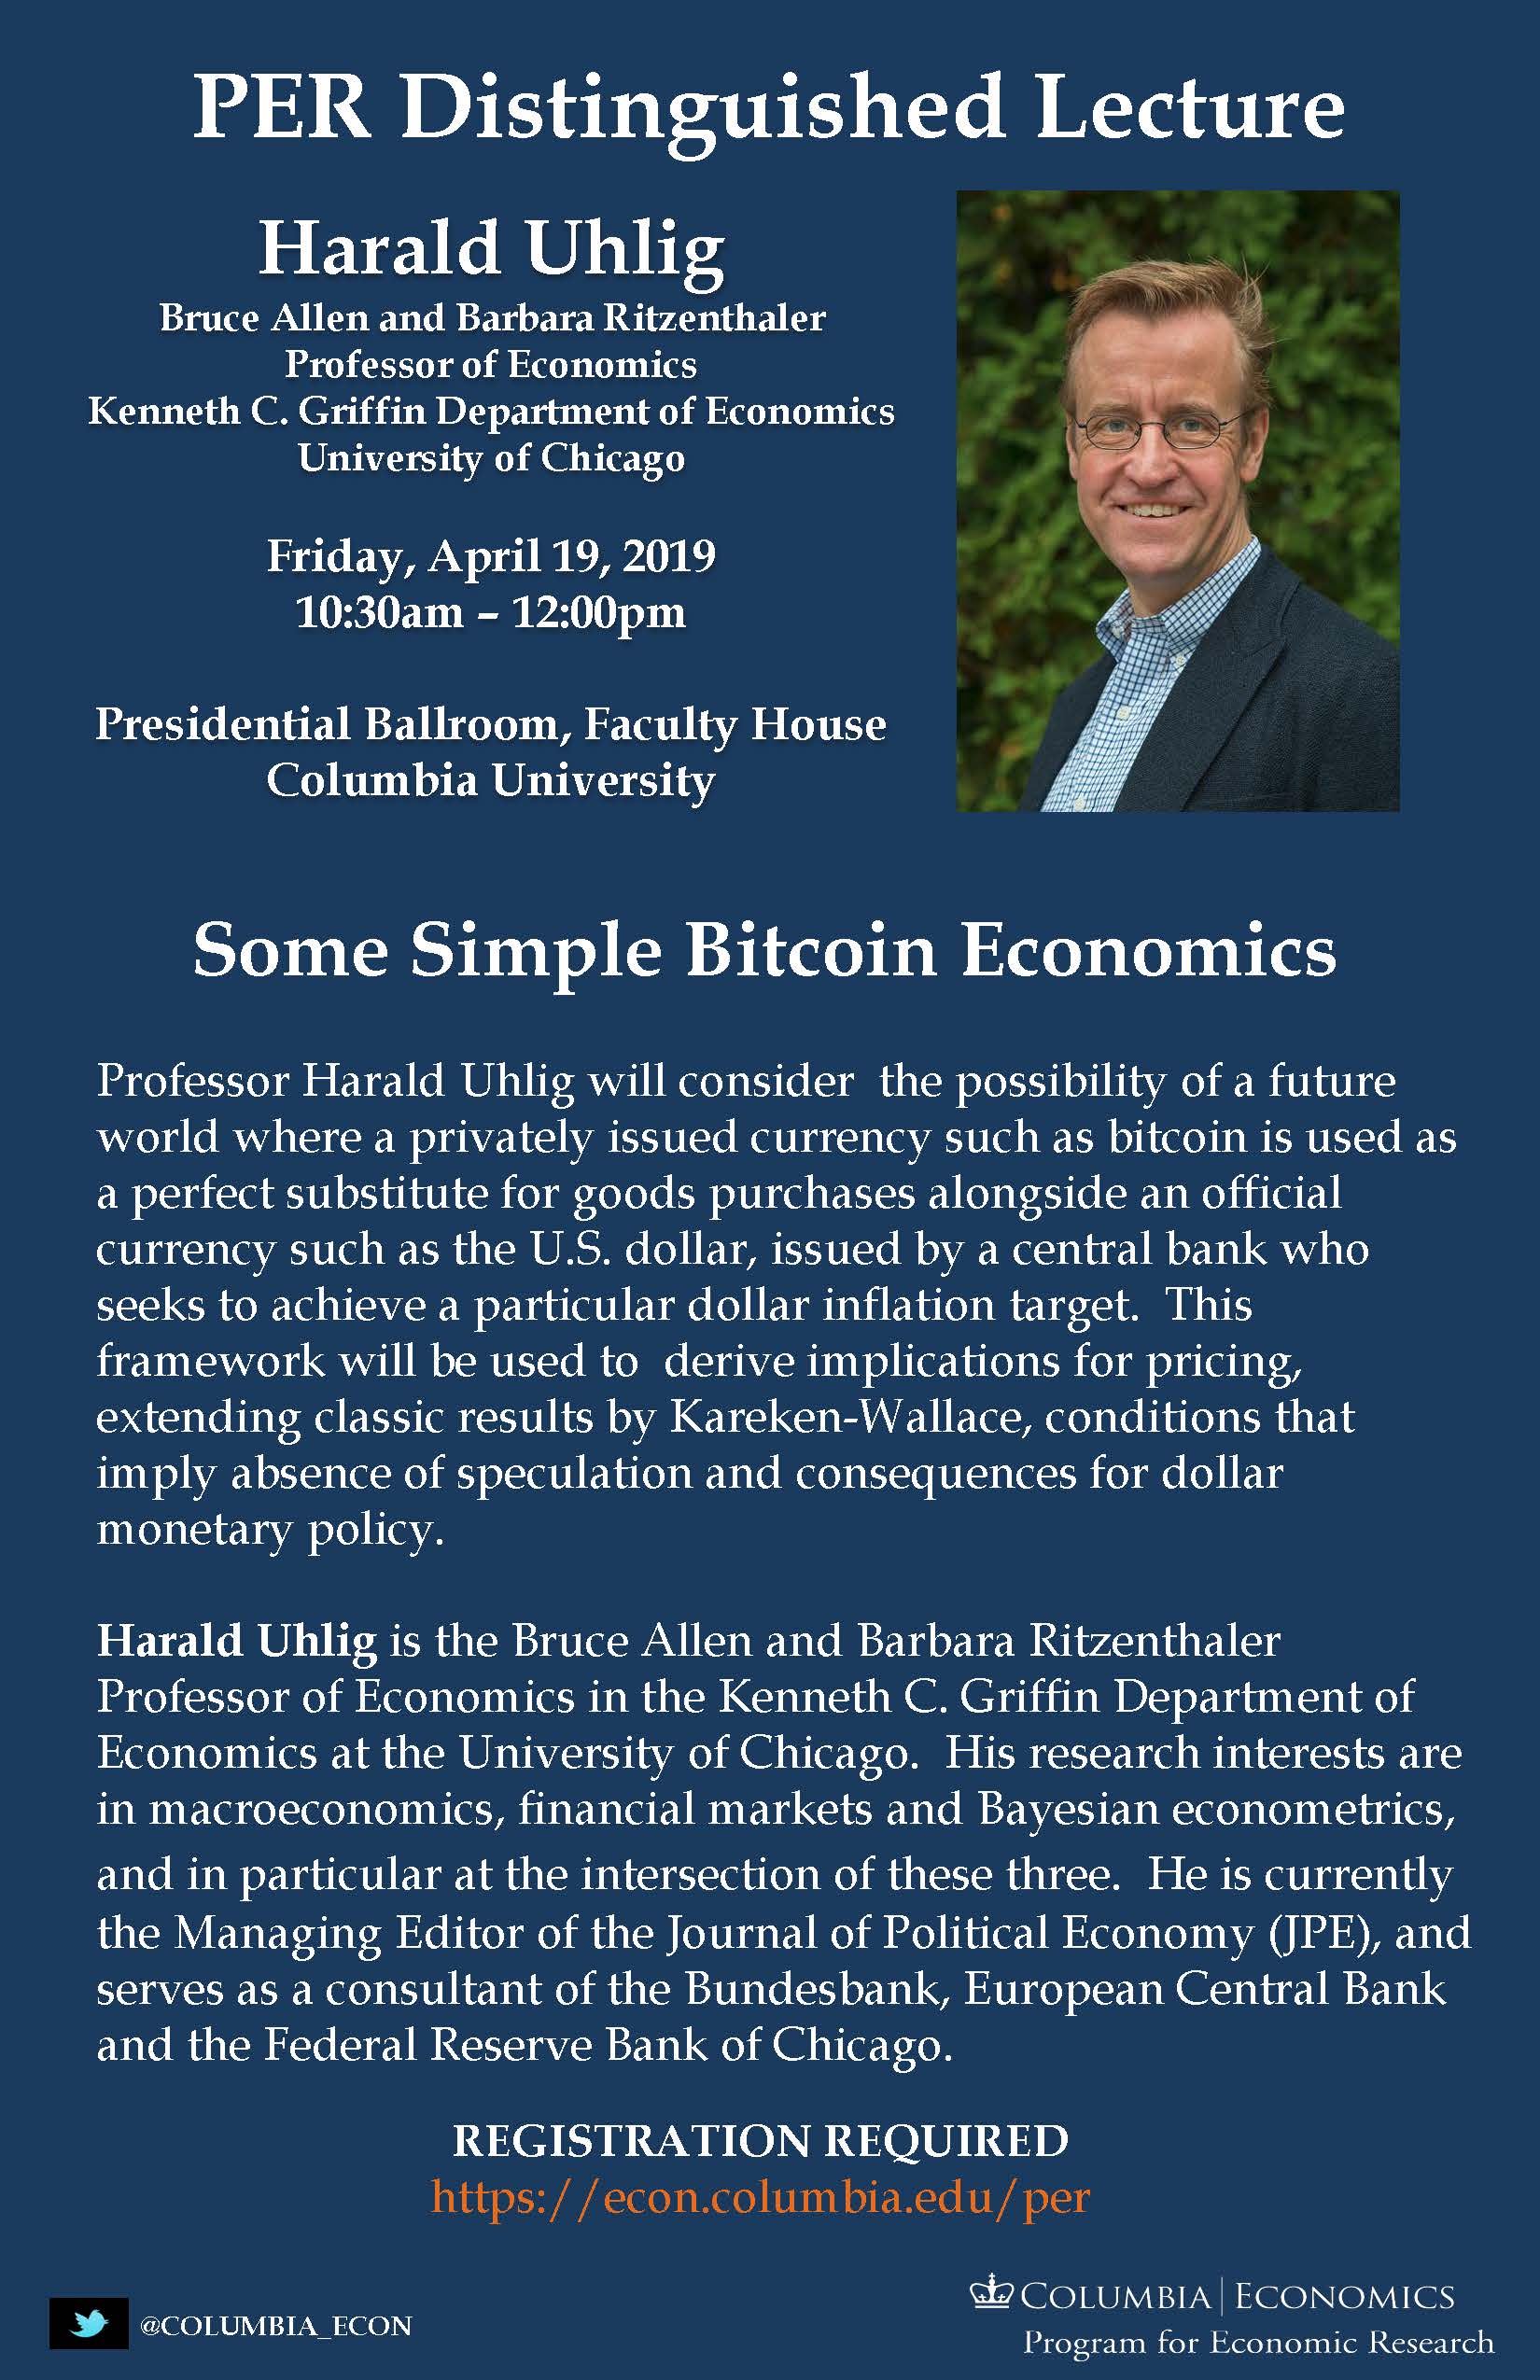 Harald Uhlig. Distinguished Lecture. April 2019 Poster